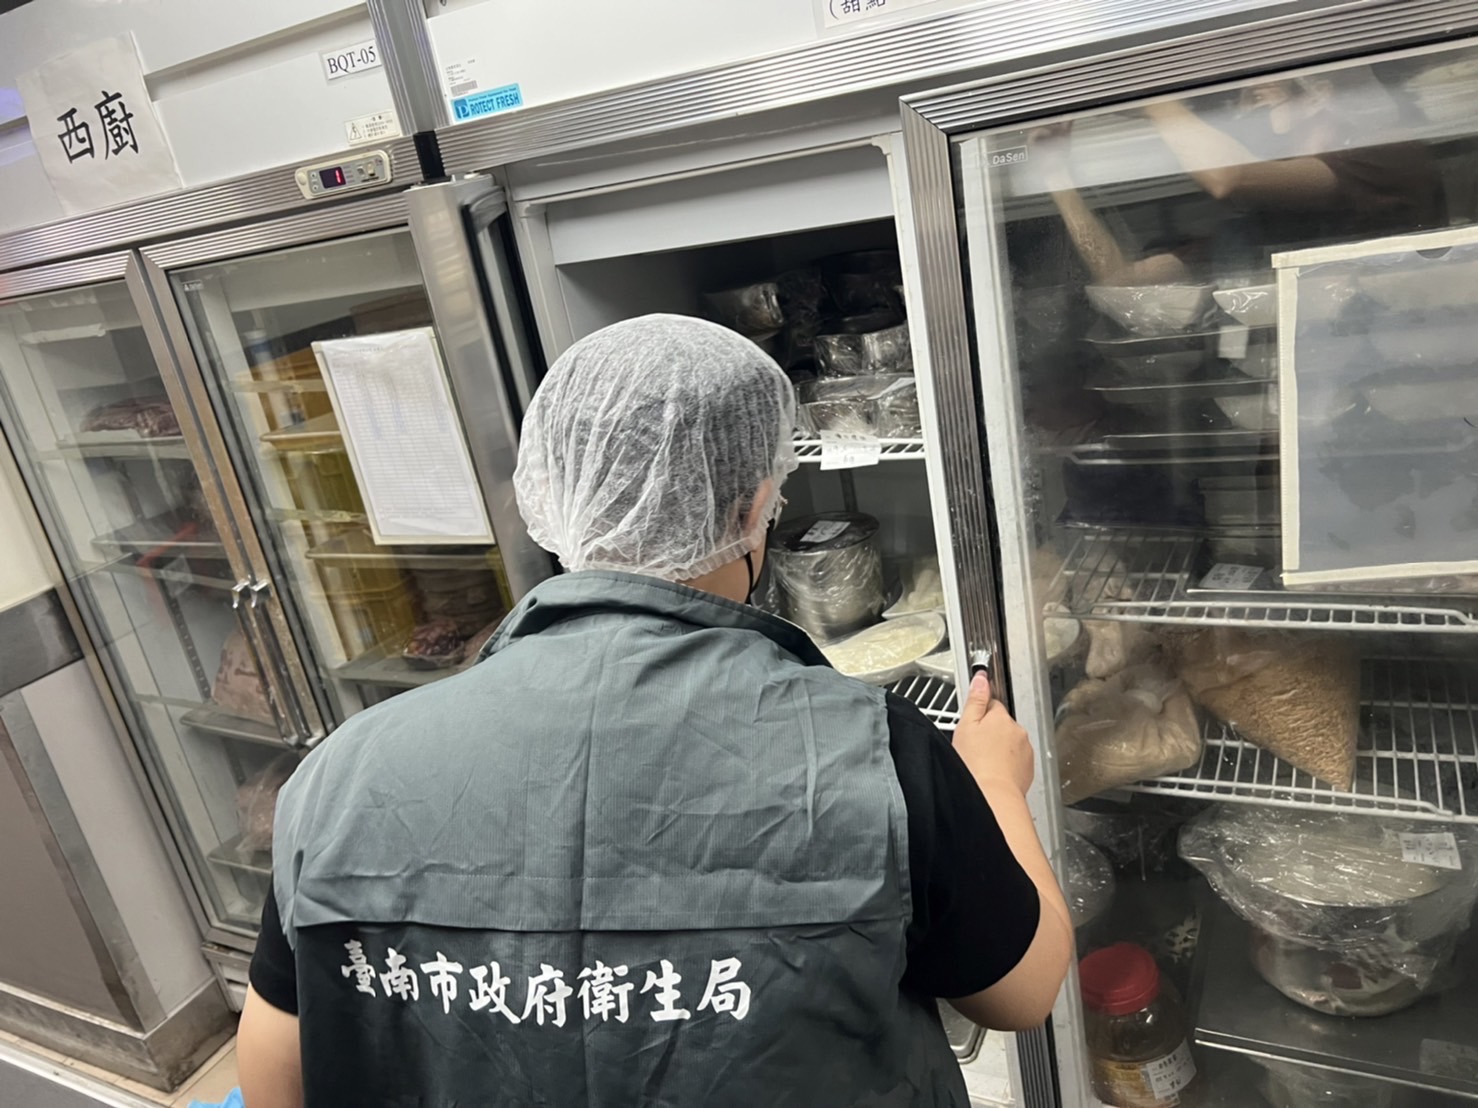 台南晶英酒店疑似食品中毒案     南市衛生局立即派員調查